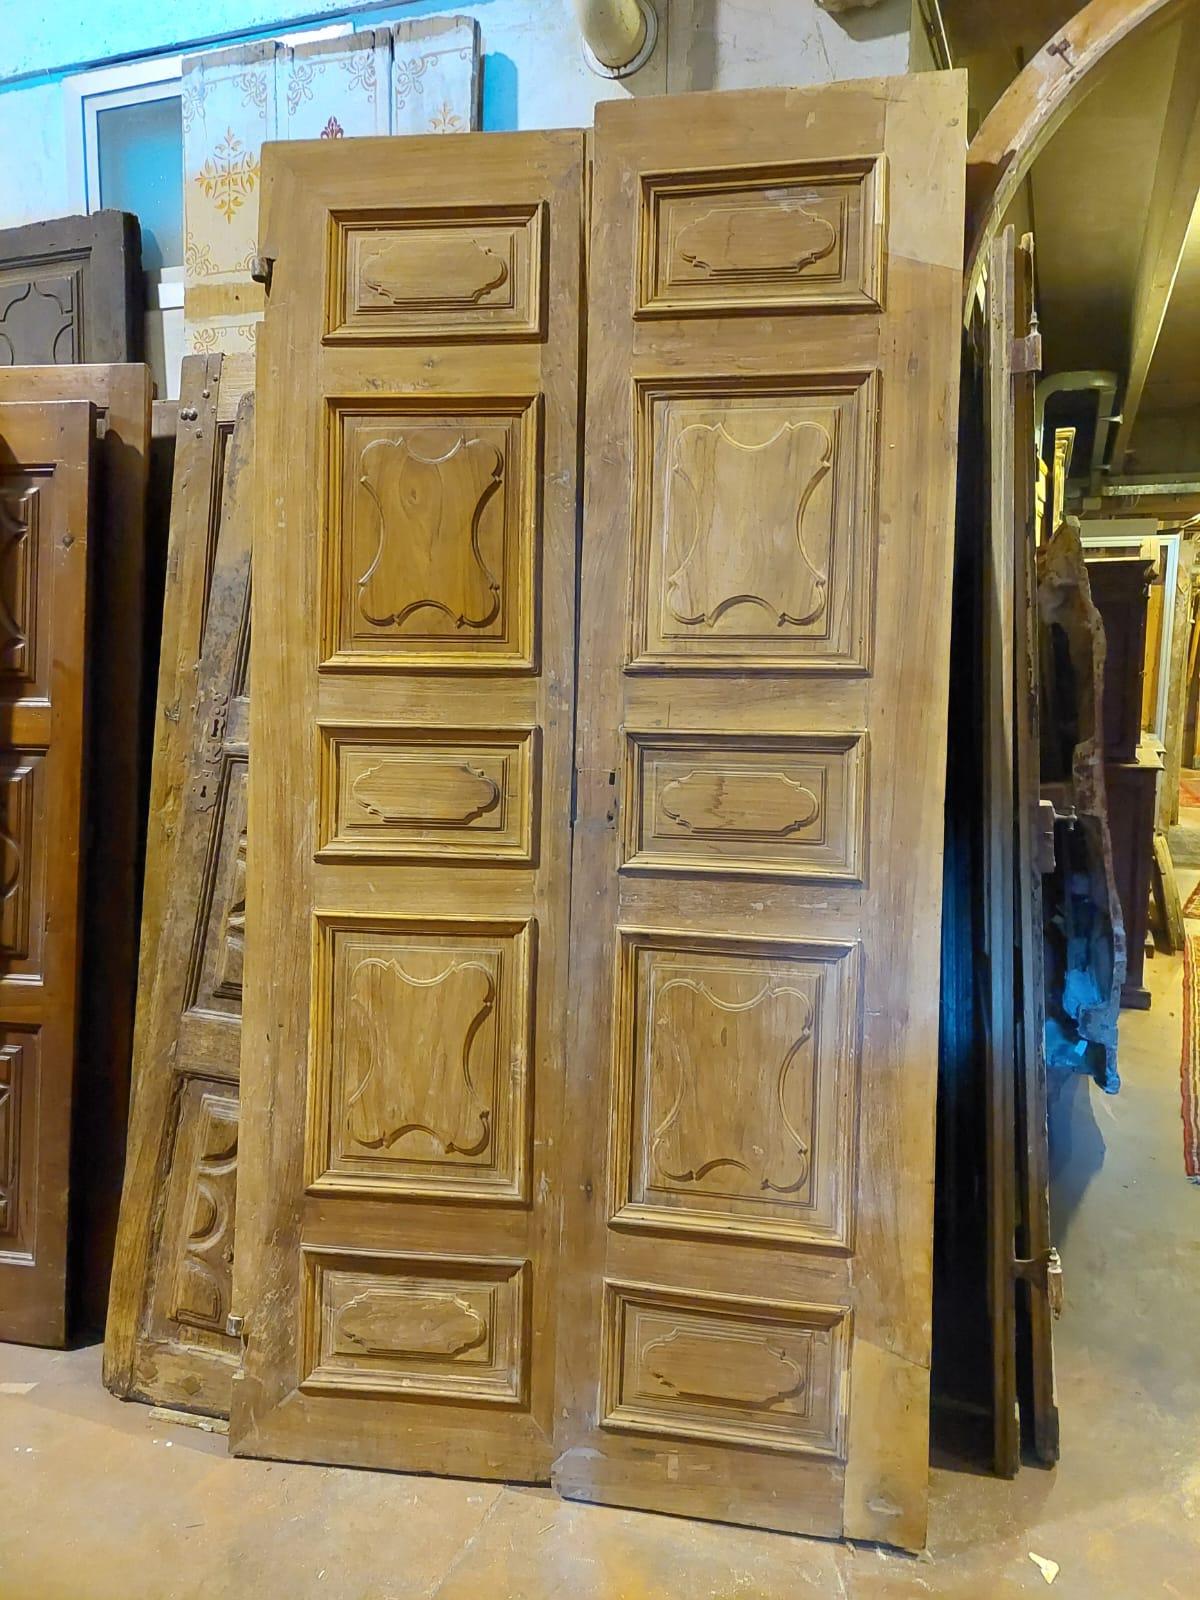 Ancienne porte d'entrée, porte principale avec deux battants, sculptée à la main dans du bois de noyer massif, carreaux sculptés typiques de l'époque, déjà partiellement restaurée par la menuiserie peut encore être adaptée un peu en largeur, couleur